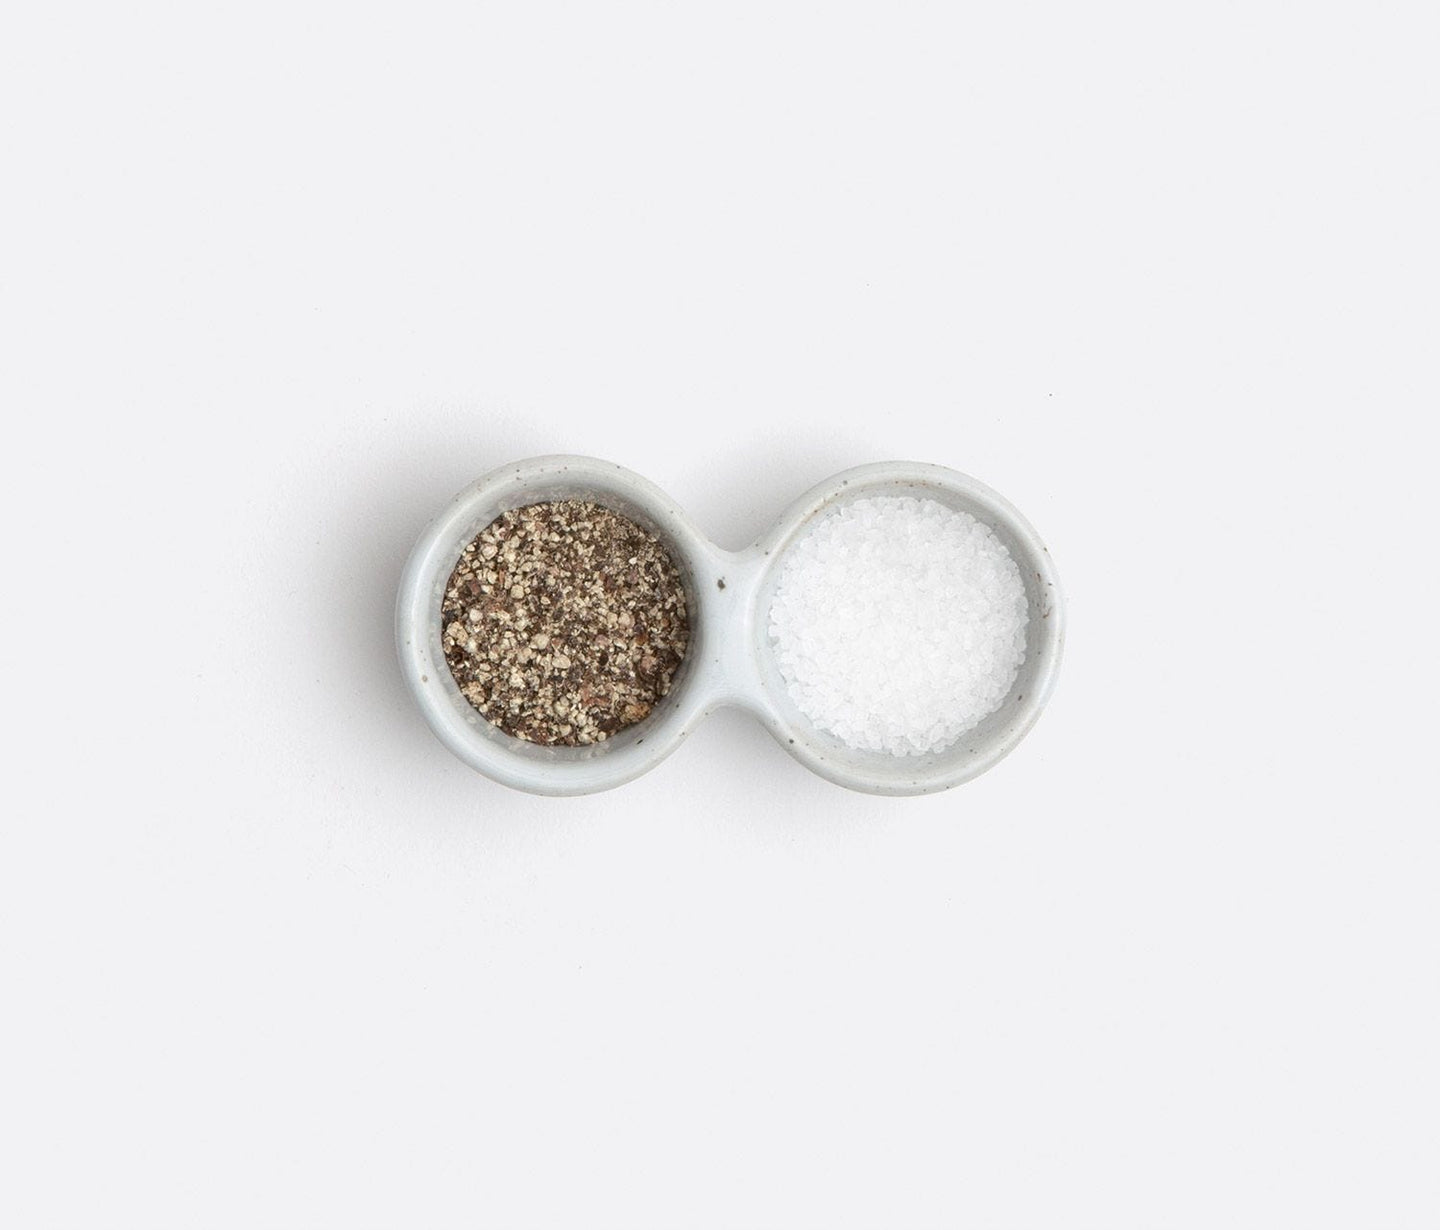 Salt & Pepper Shakers / Pinch Bowls